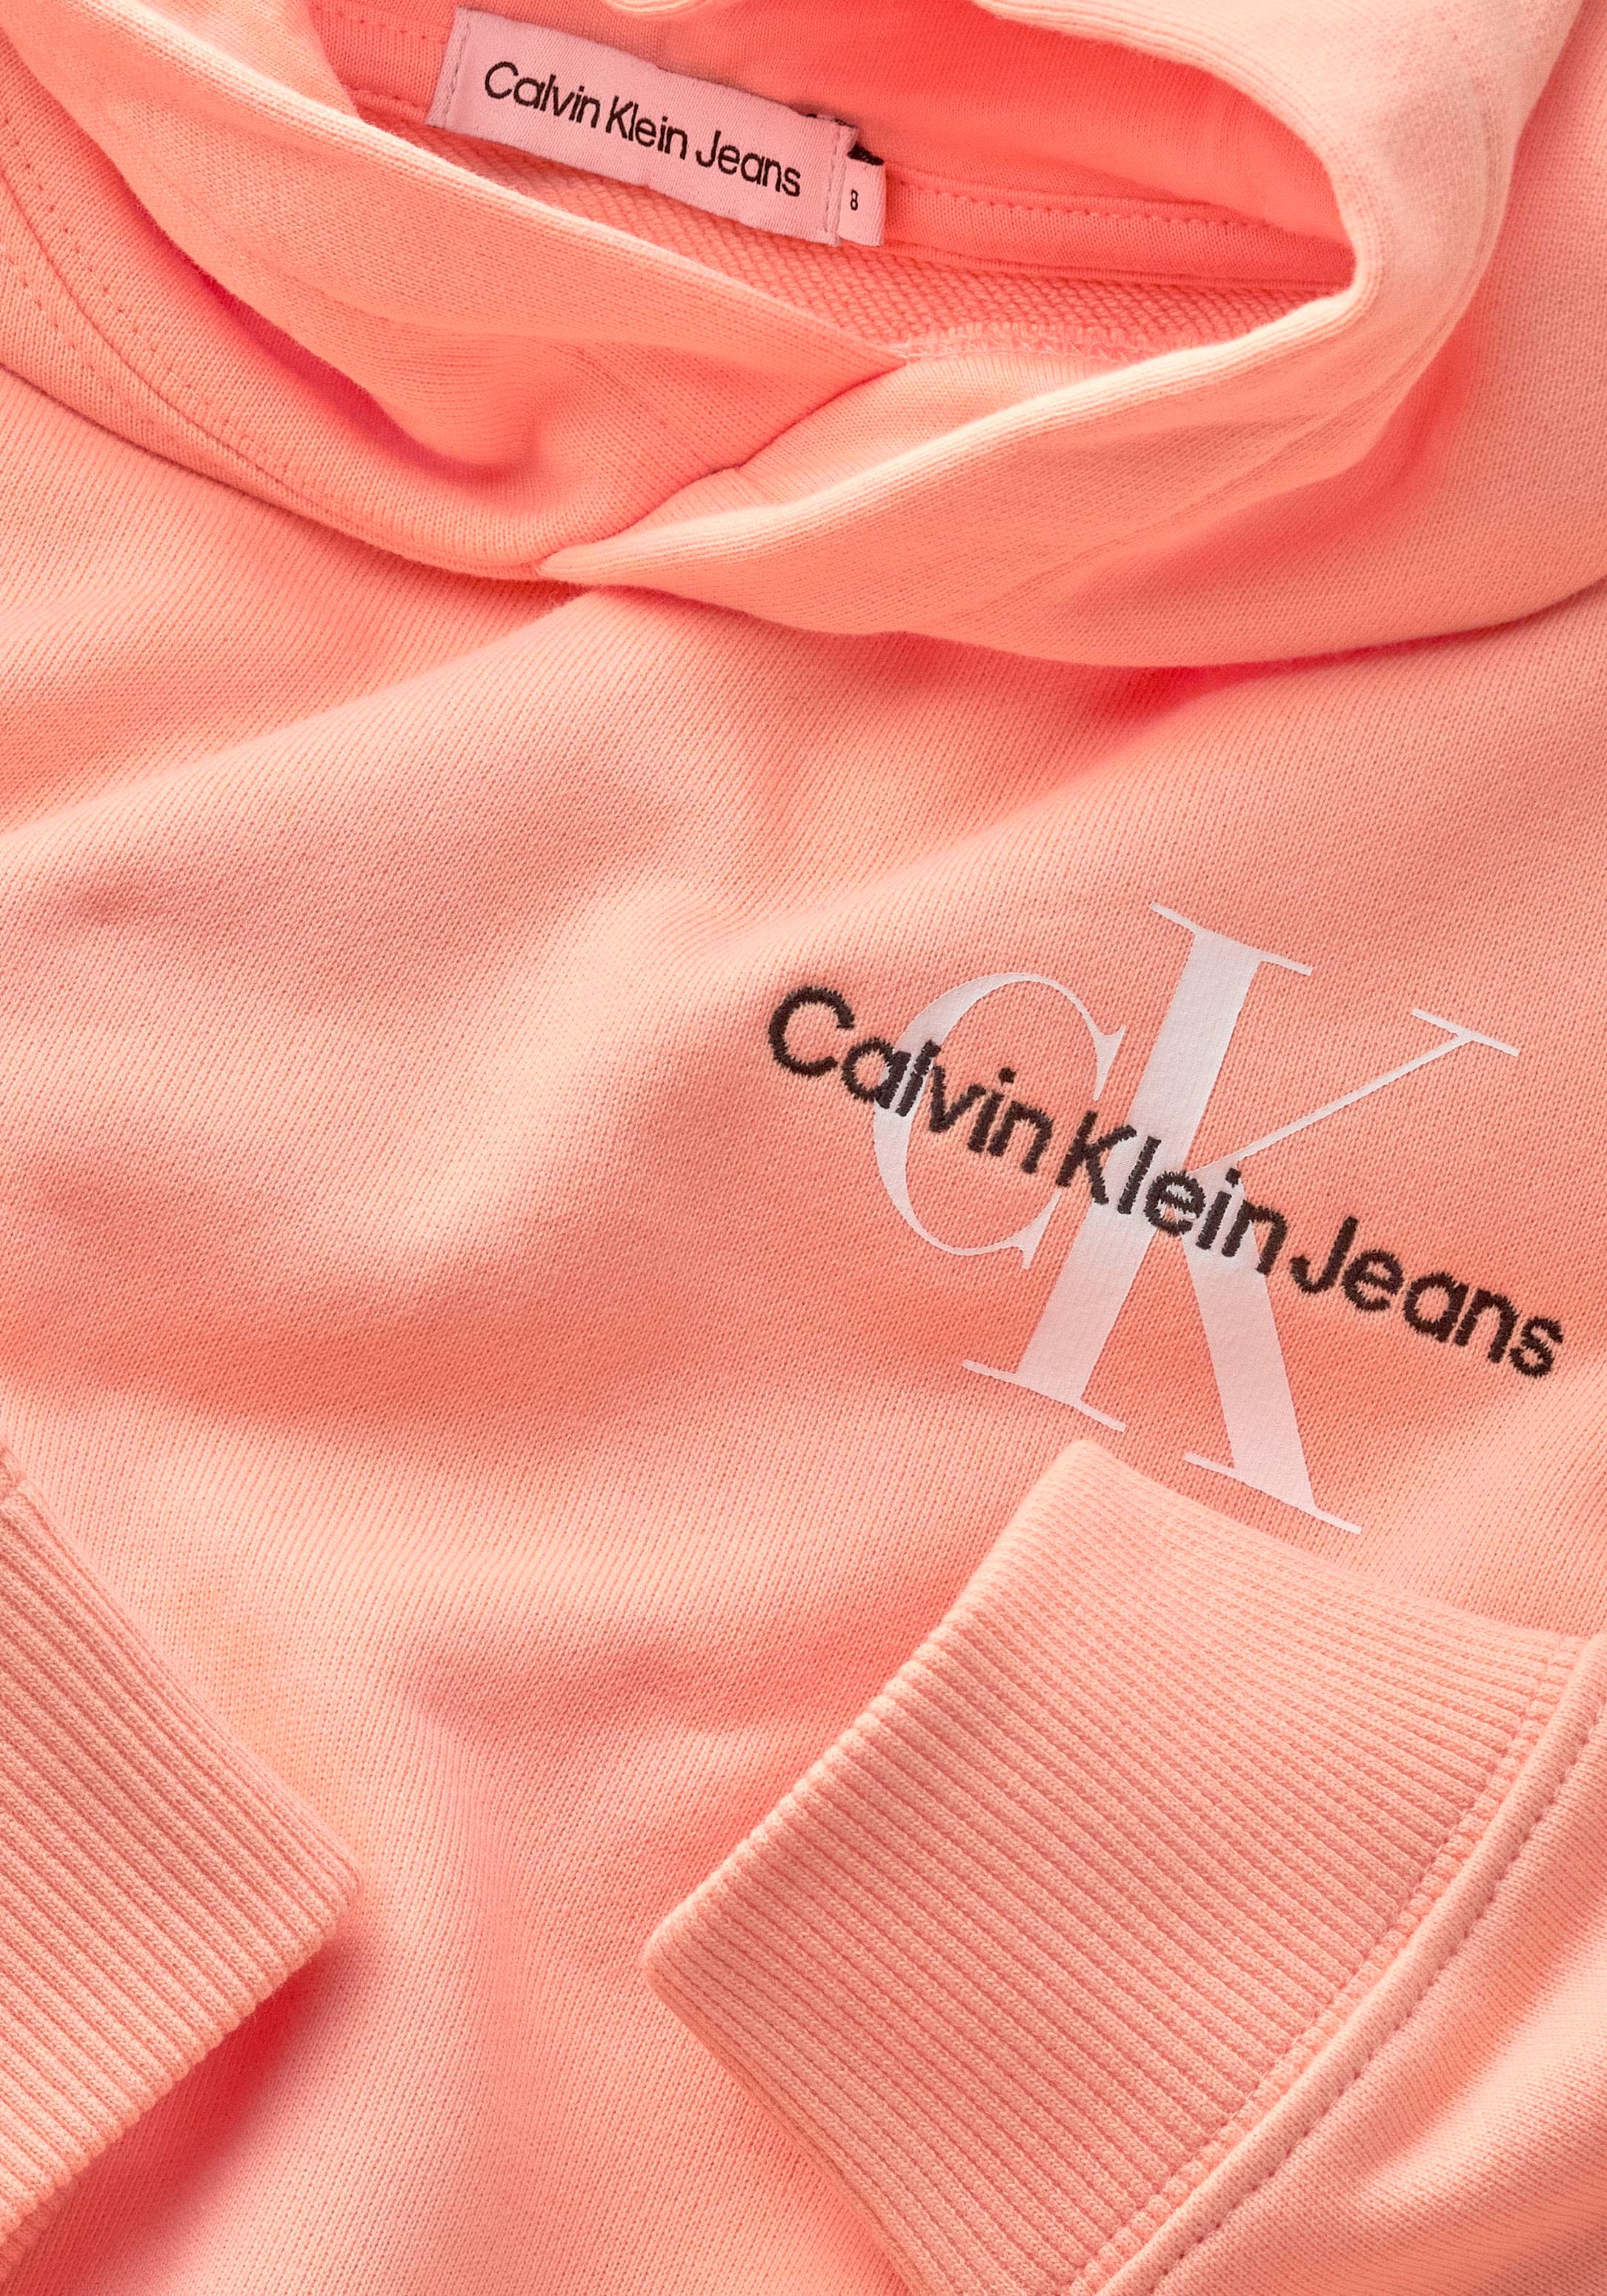 ❤ Calvin Klein Jeans Kapuzensweatshirt, Kinder Kids Junior MiniMe,mit Calvin  Klein Logostickerei auf der Brust entdecken im Jelmoli-Online Shop